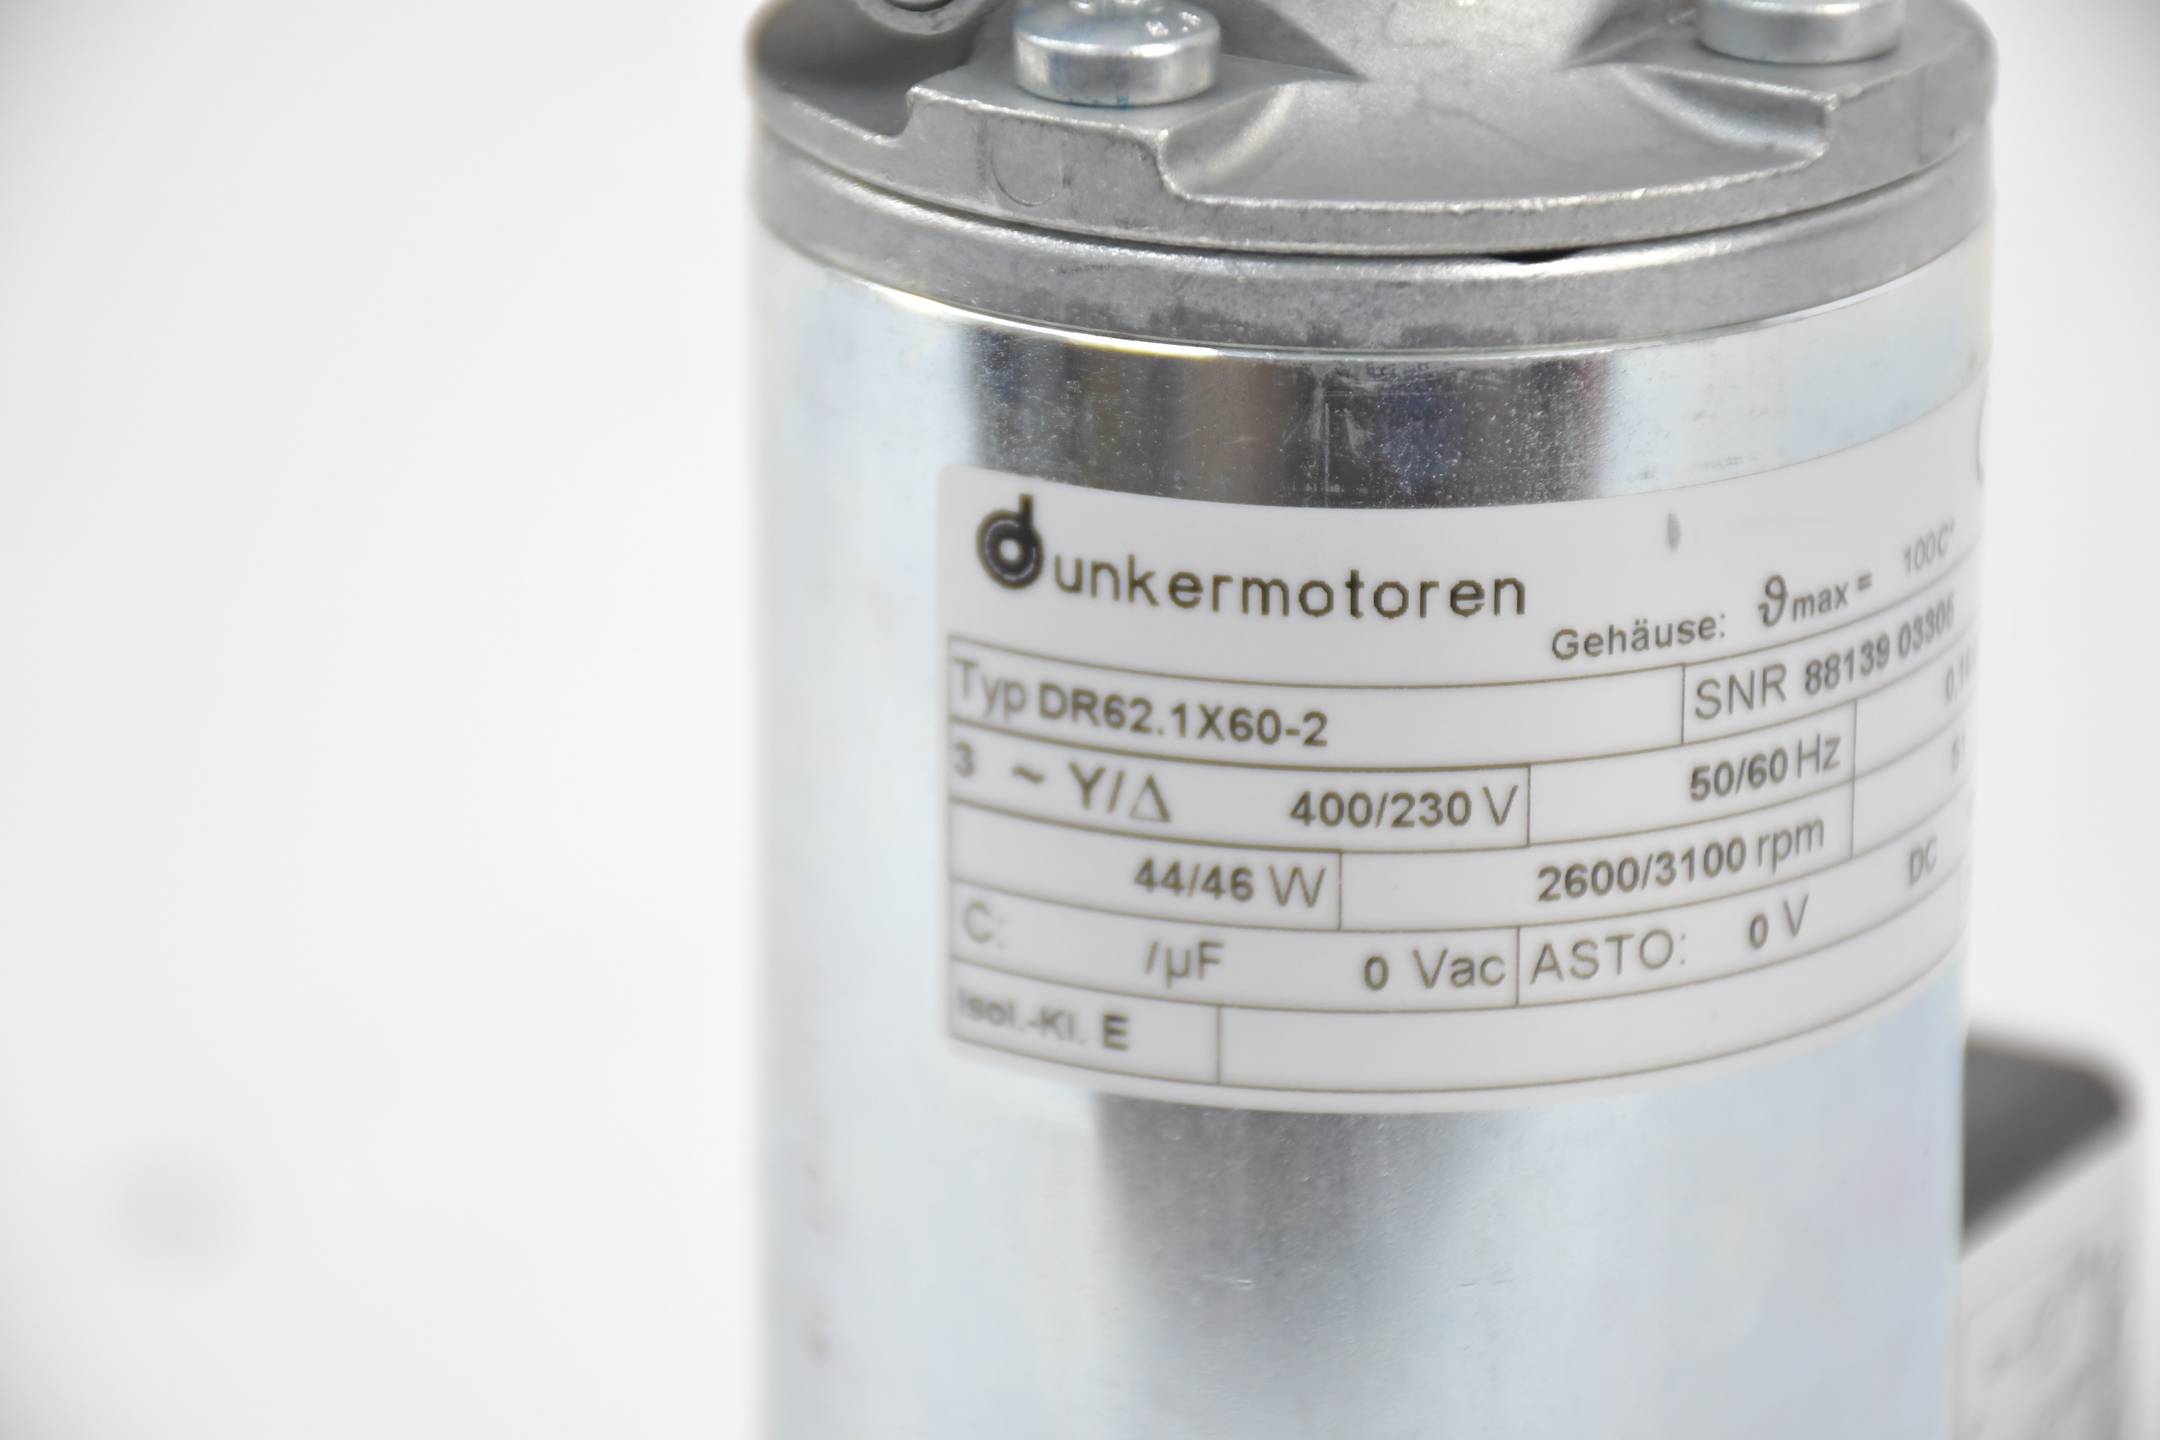 Dunkermotoren DR62.1X60-2 2600/3100 rpm ( DR621X60-2 )